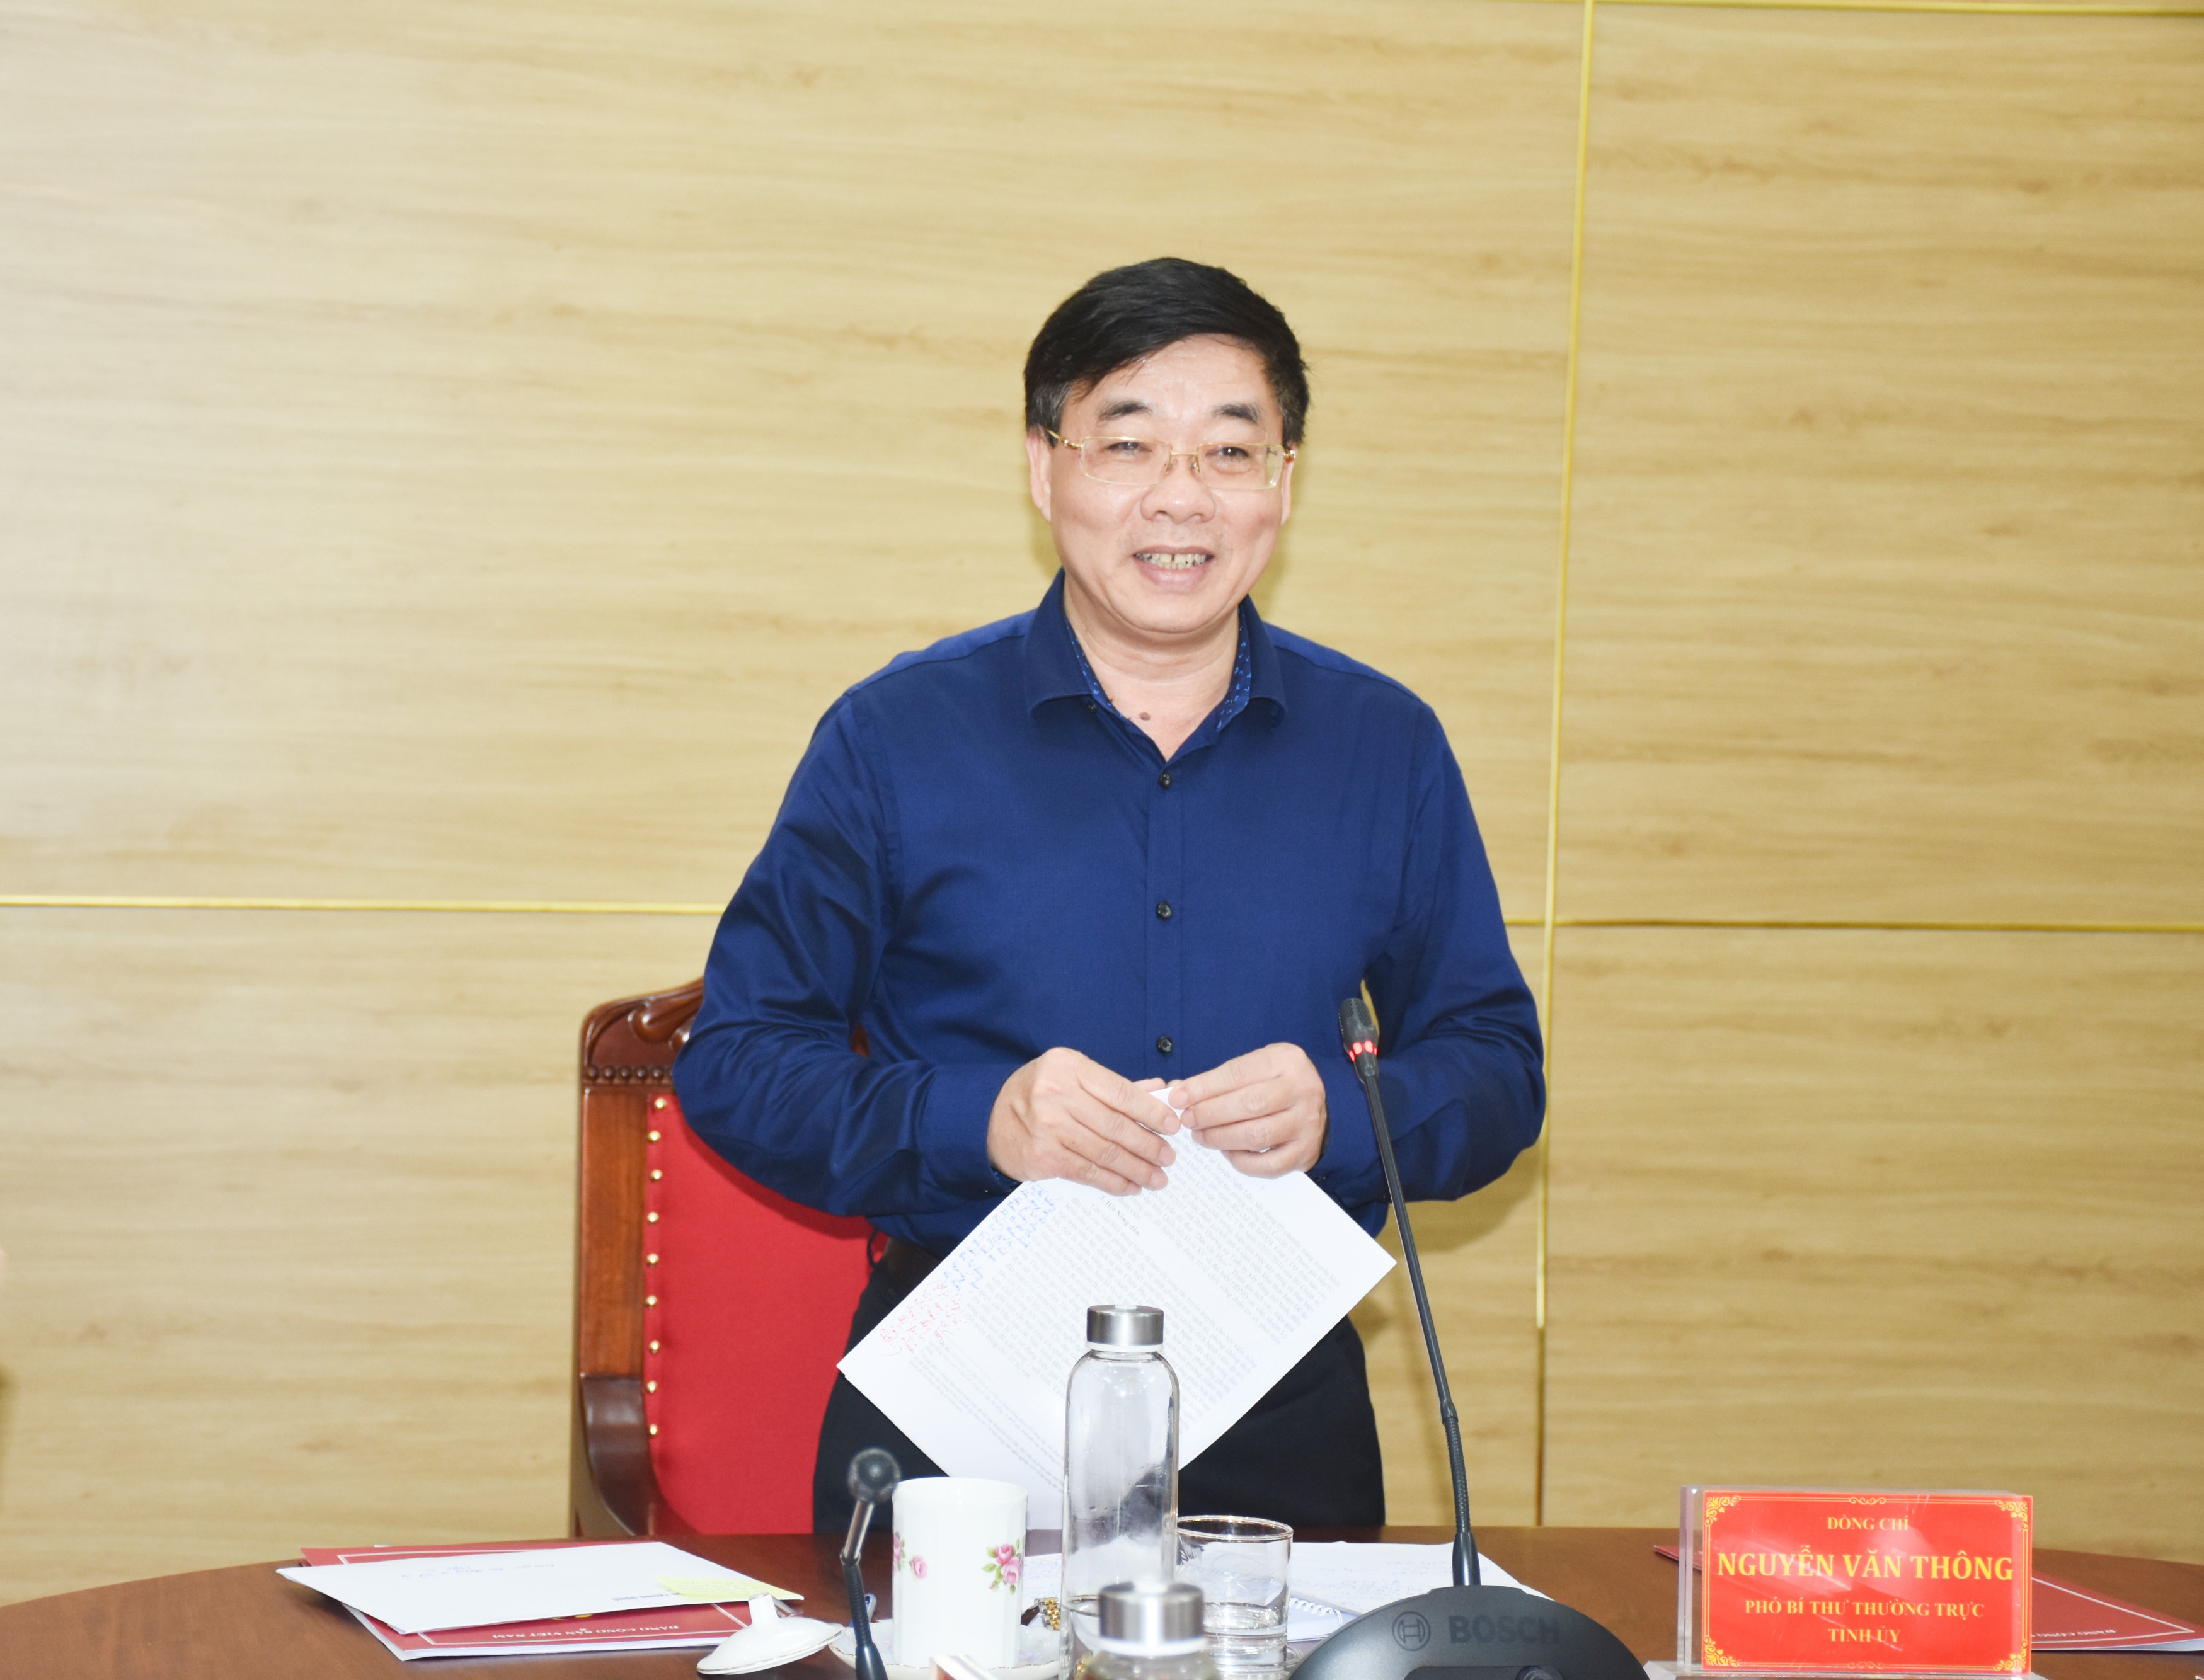 Phó Bí thư Thường trực Tỉnh ủy Nguyễn Văn Thông kết luận hội nghị. Ảnh: Thanh Lê